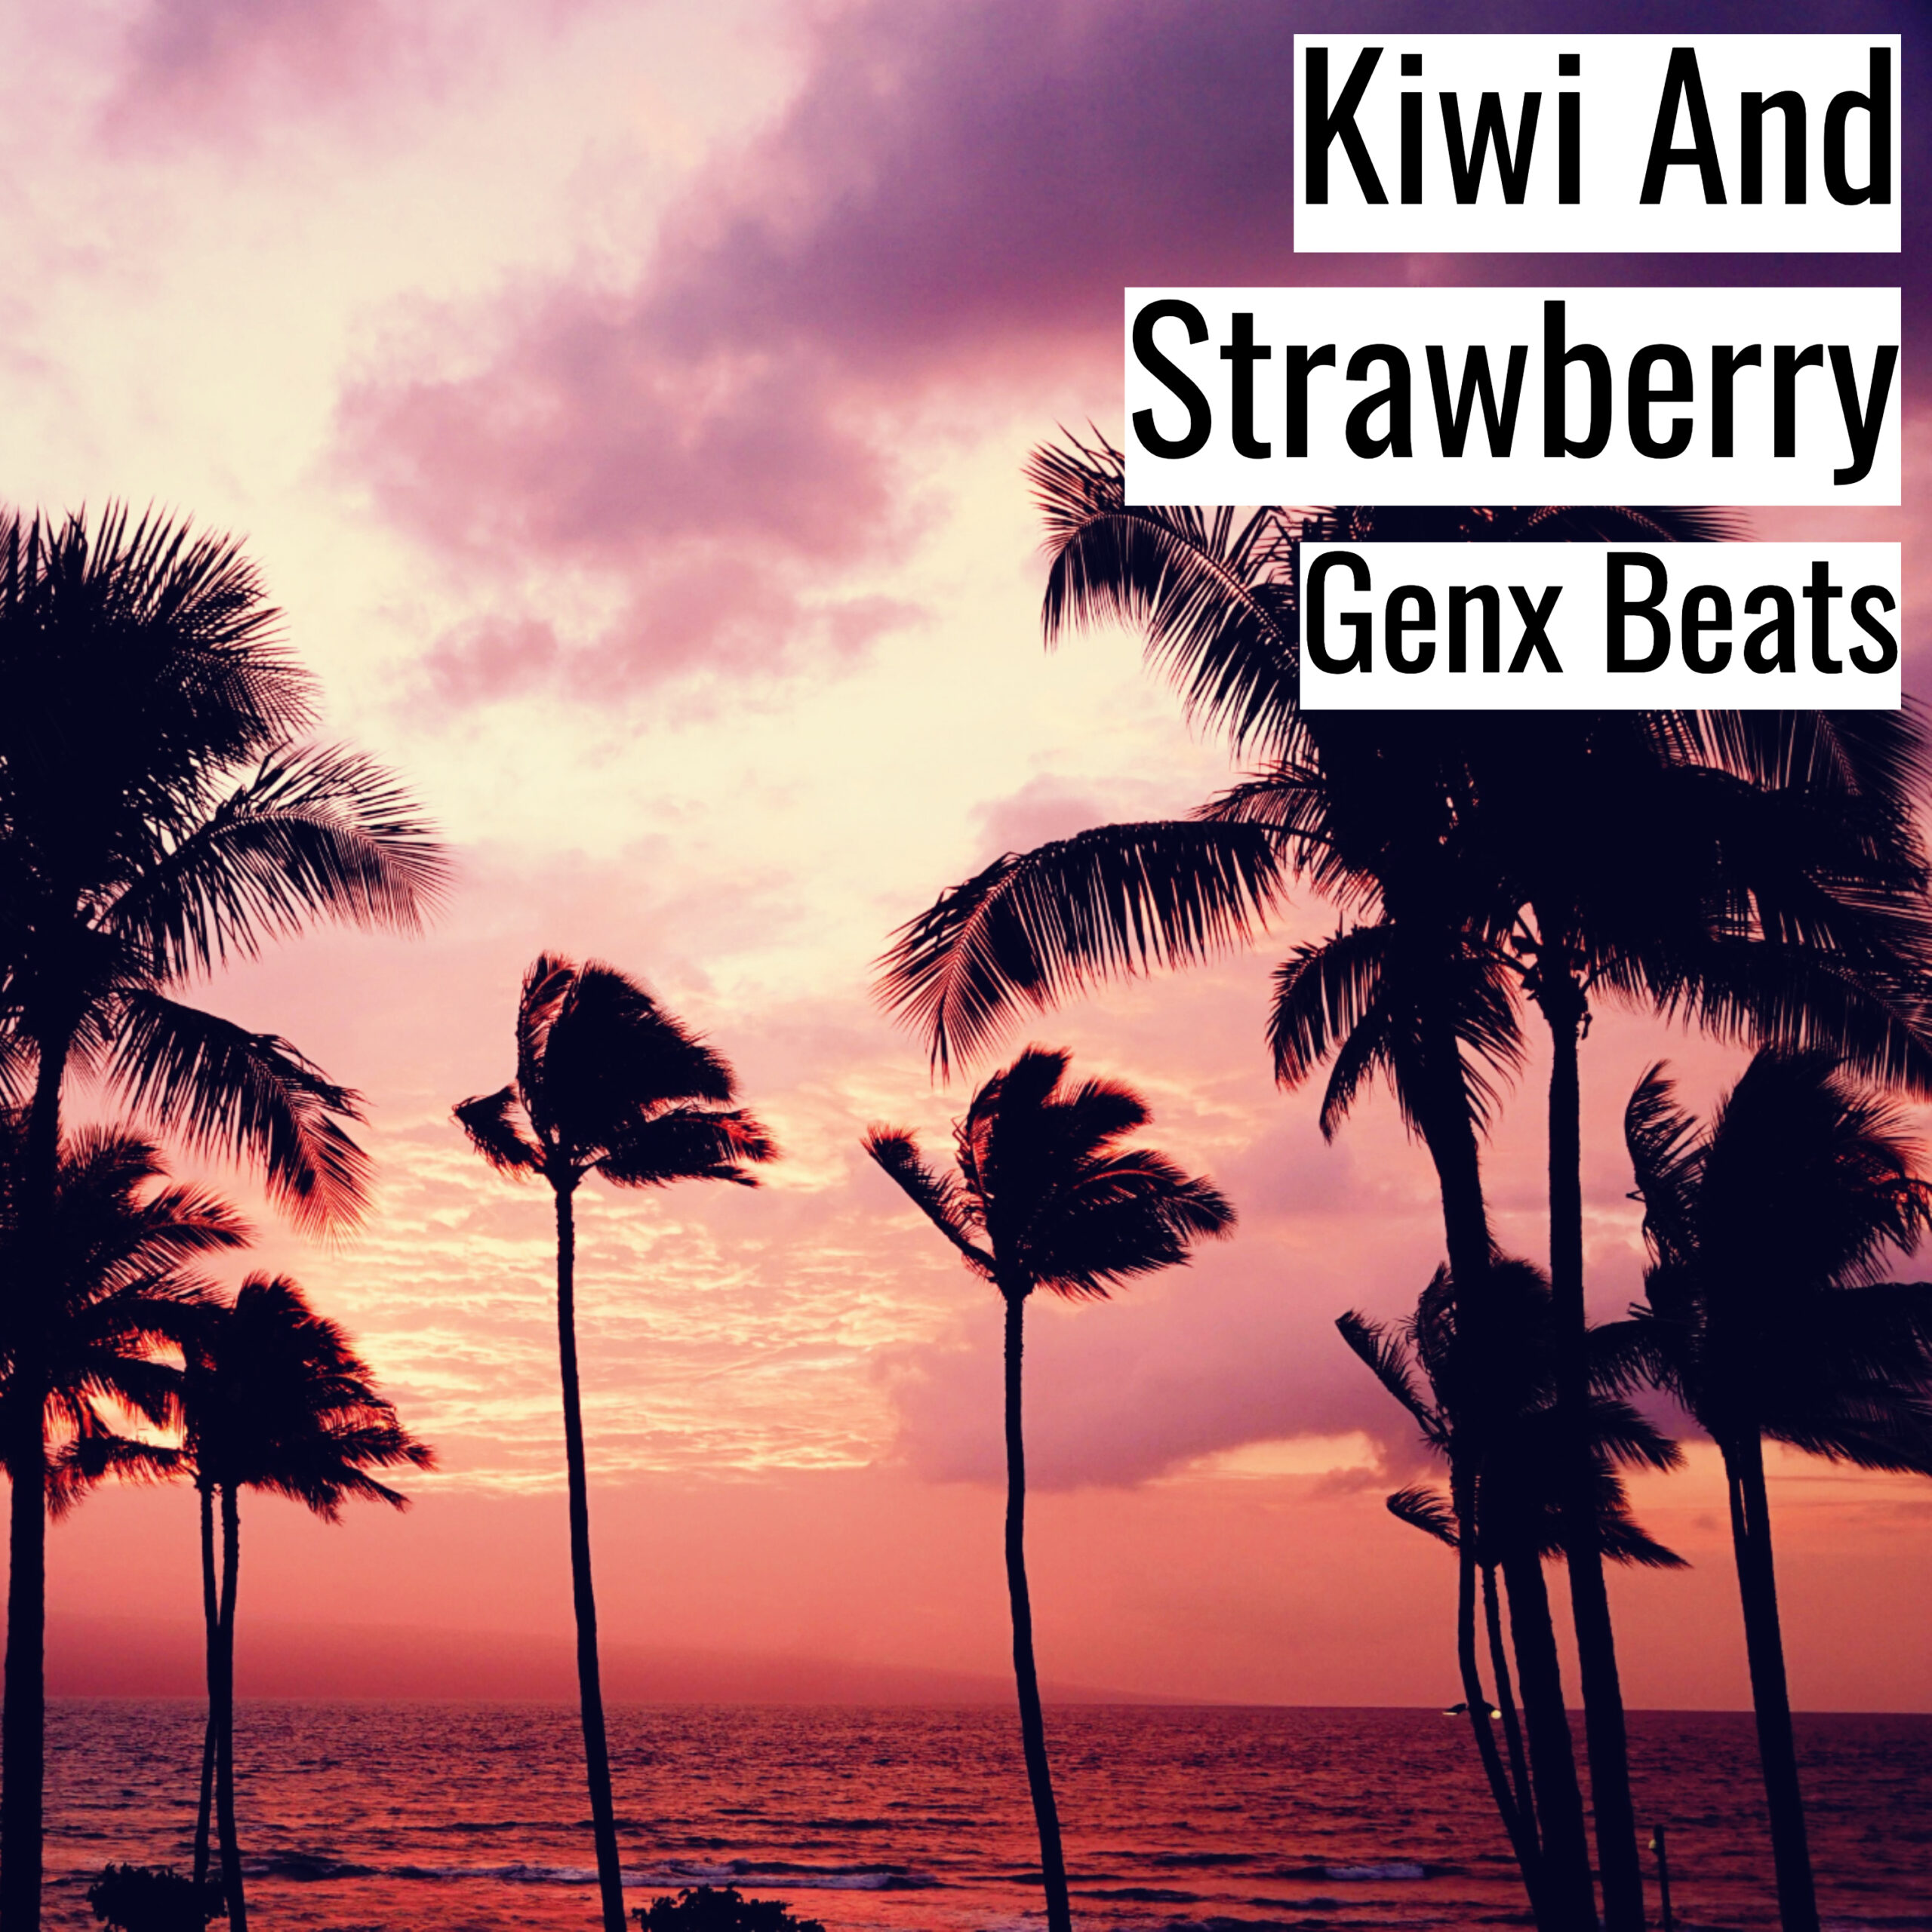 Kiwi And Strawberry scaled